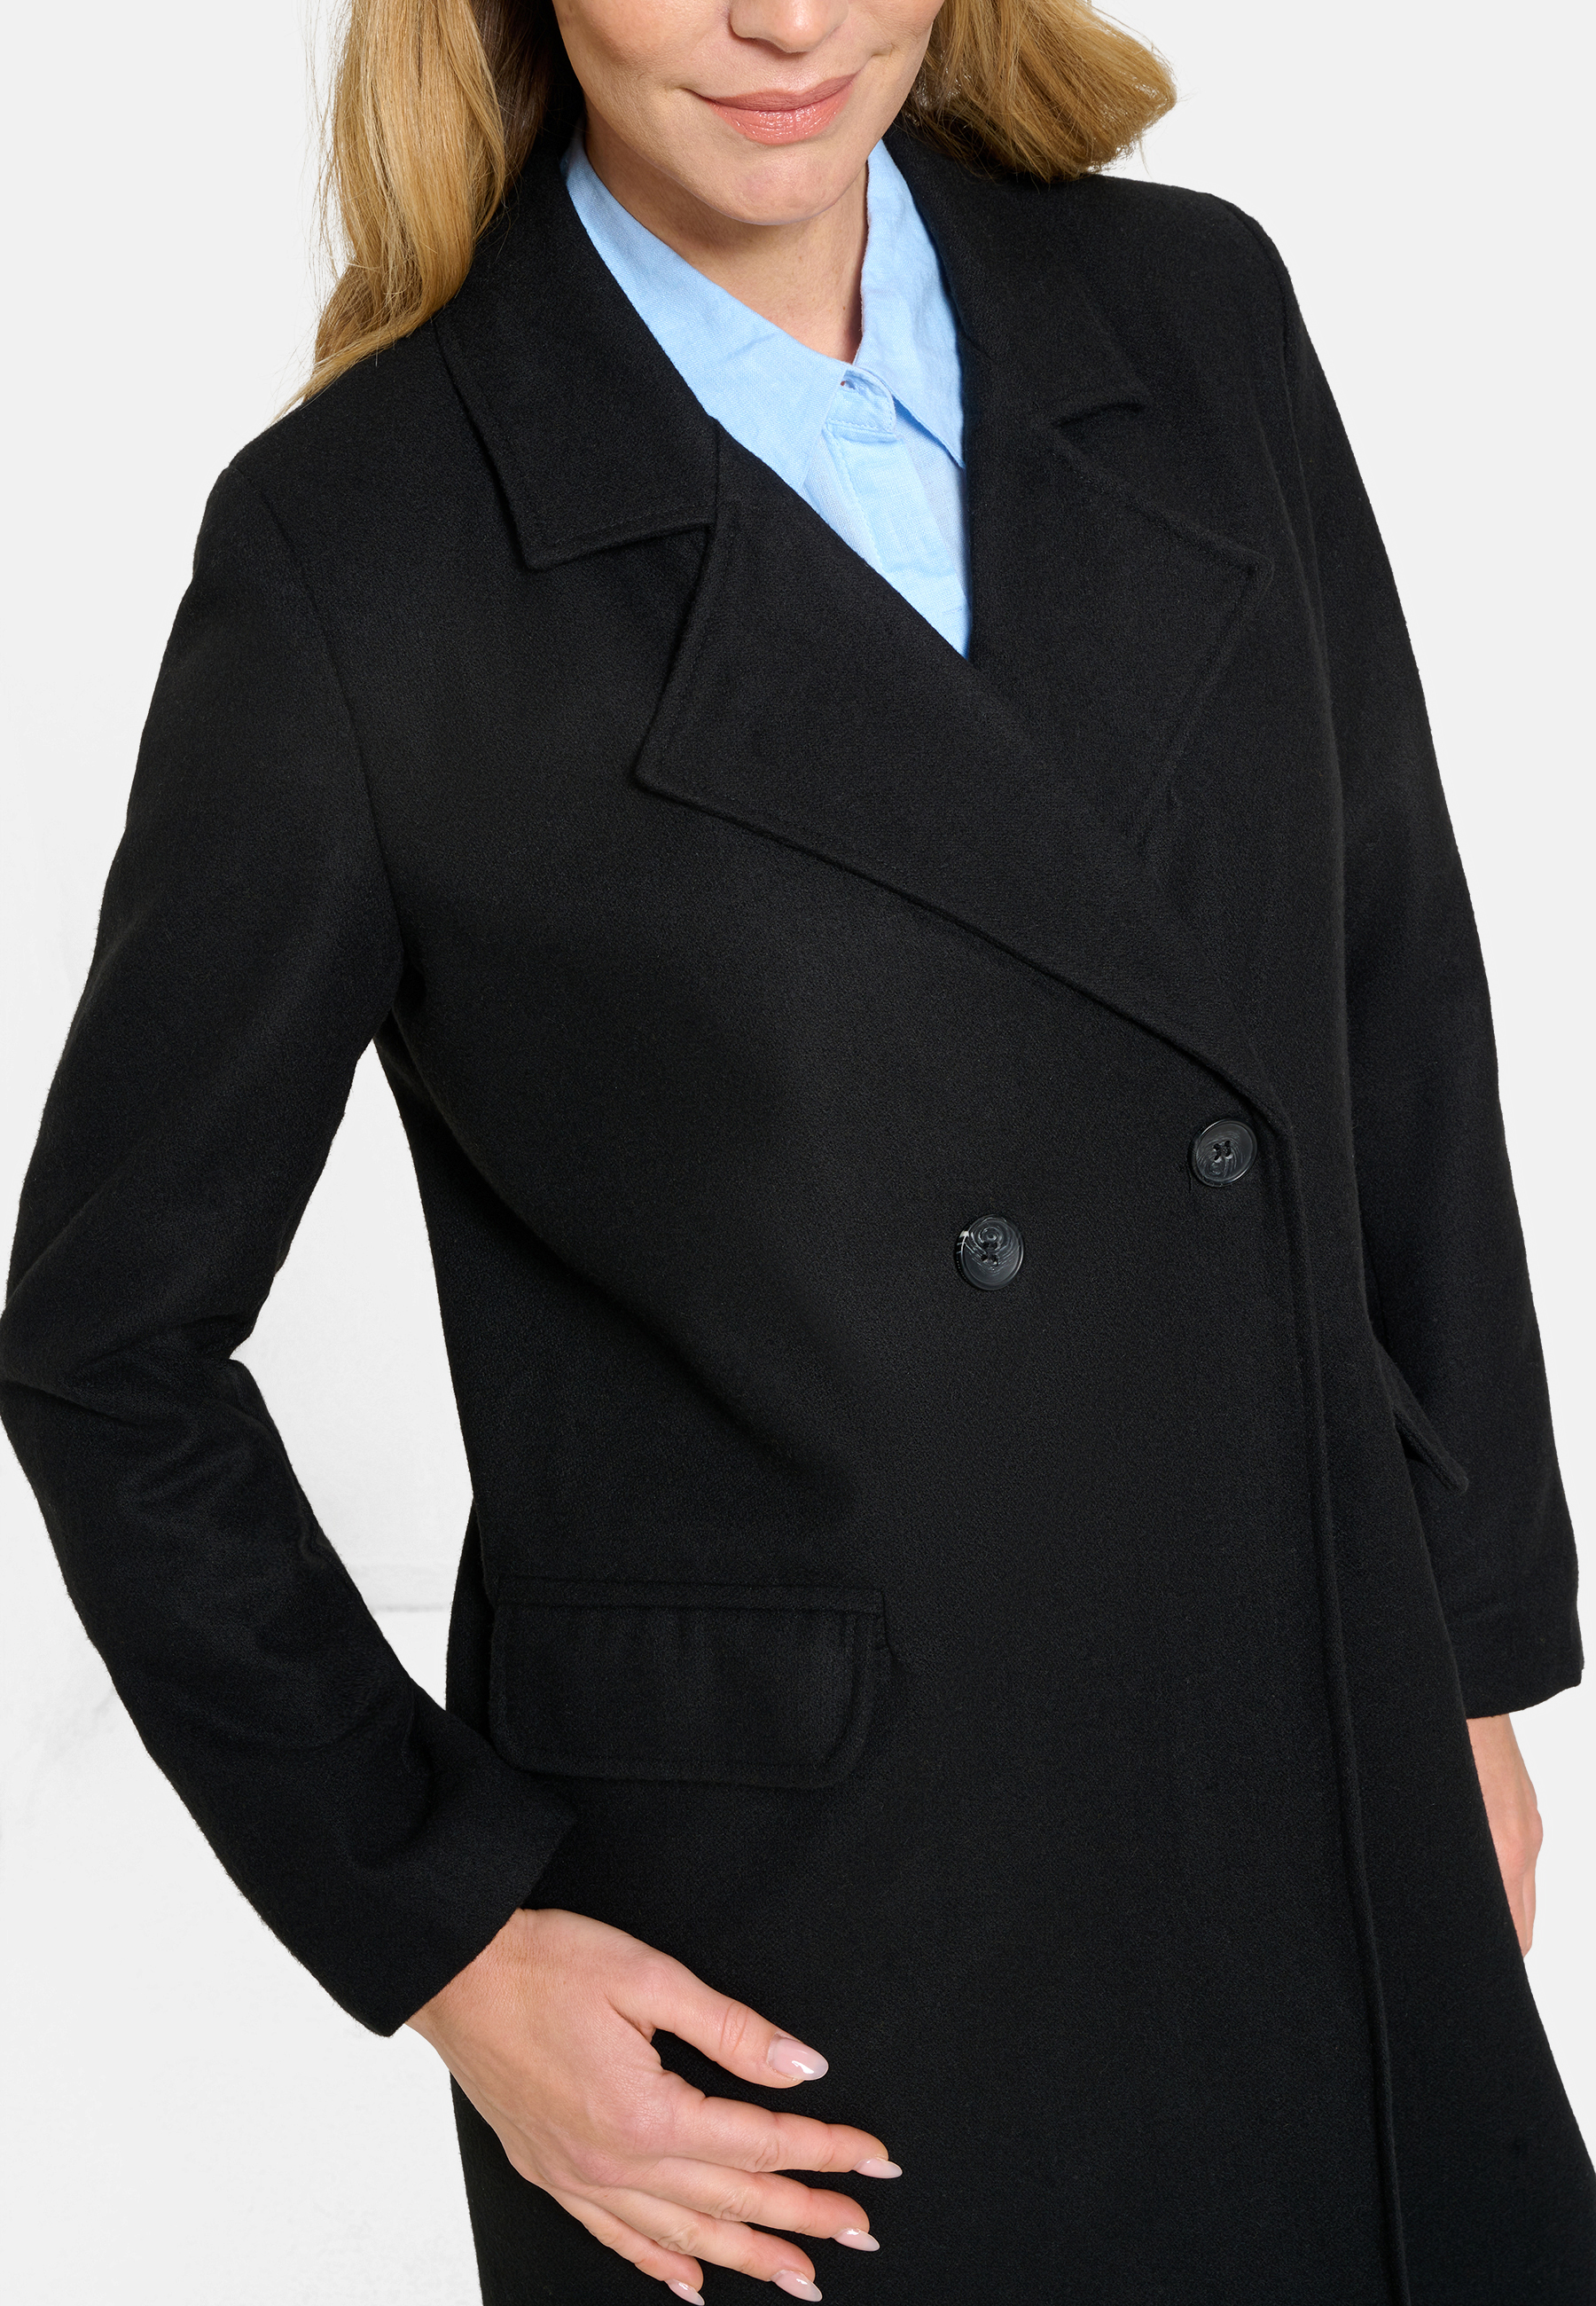 Damen Textil Mantel Alberta in Schwarz von Ricano, Detailansicht Reversekragen mit V-Ausschnitt, Zwei reihen Knopfschluss, Zwei Einklapp Taschen